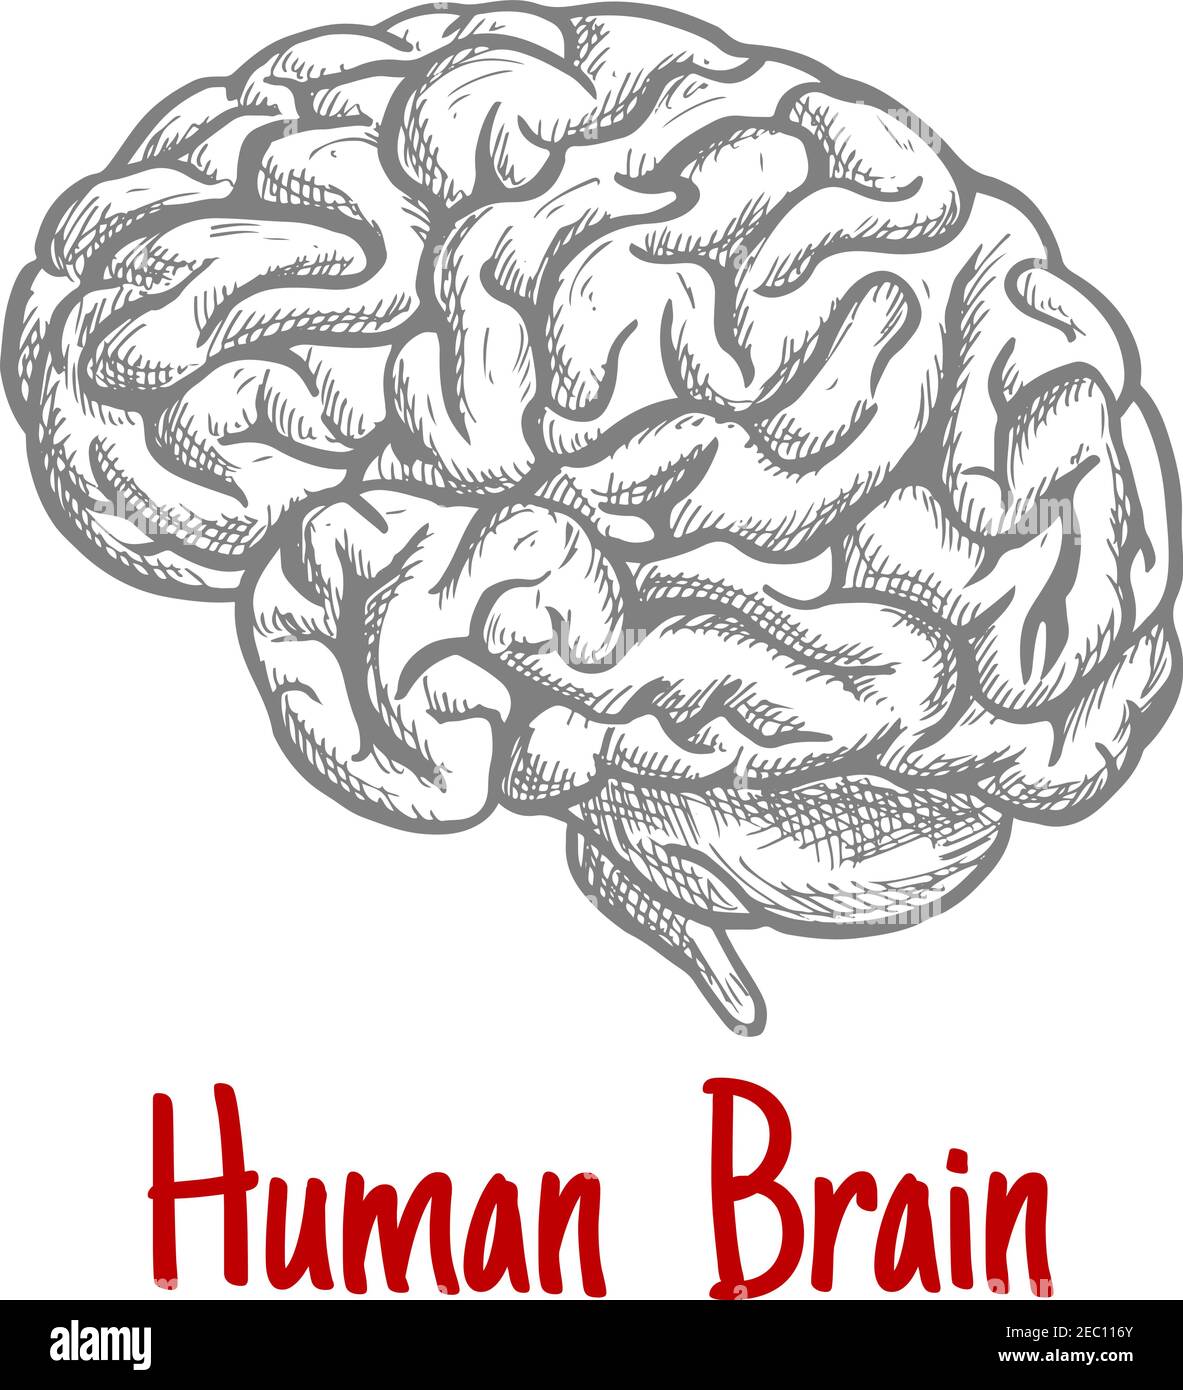 Vintage Gravurskizze des menschlichen Gehirns mit anatomisch detailliertem Hirnstamm und Hinterhirn. Medizin, Wissenschaft oder Brainstorming Konzept Stock Vektor